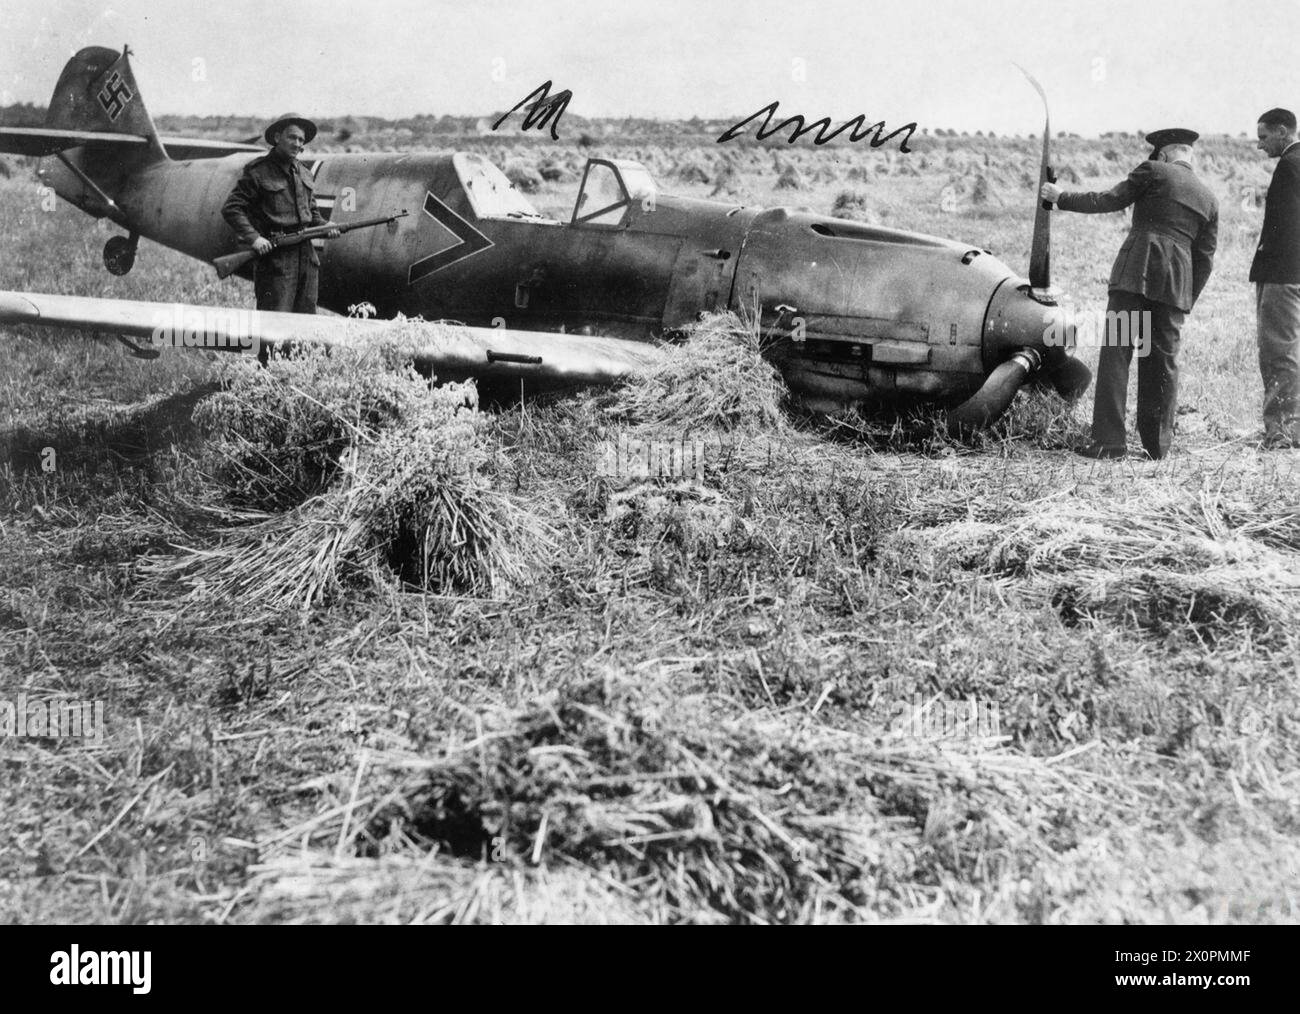 LA BATTAGLIA DELLA GRAN BRETAGNA - Messerschmitt Bf 109E-1 dell'Oberleutnant Paul Temme, Gruppe Adjutant del i/ JG 2 'Richtofen', che si schiantò vicino all'aeroporto di Shoreham nel Sussex il 13 agosto 1940 Foto Stock